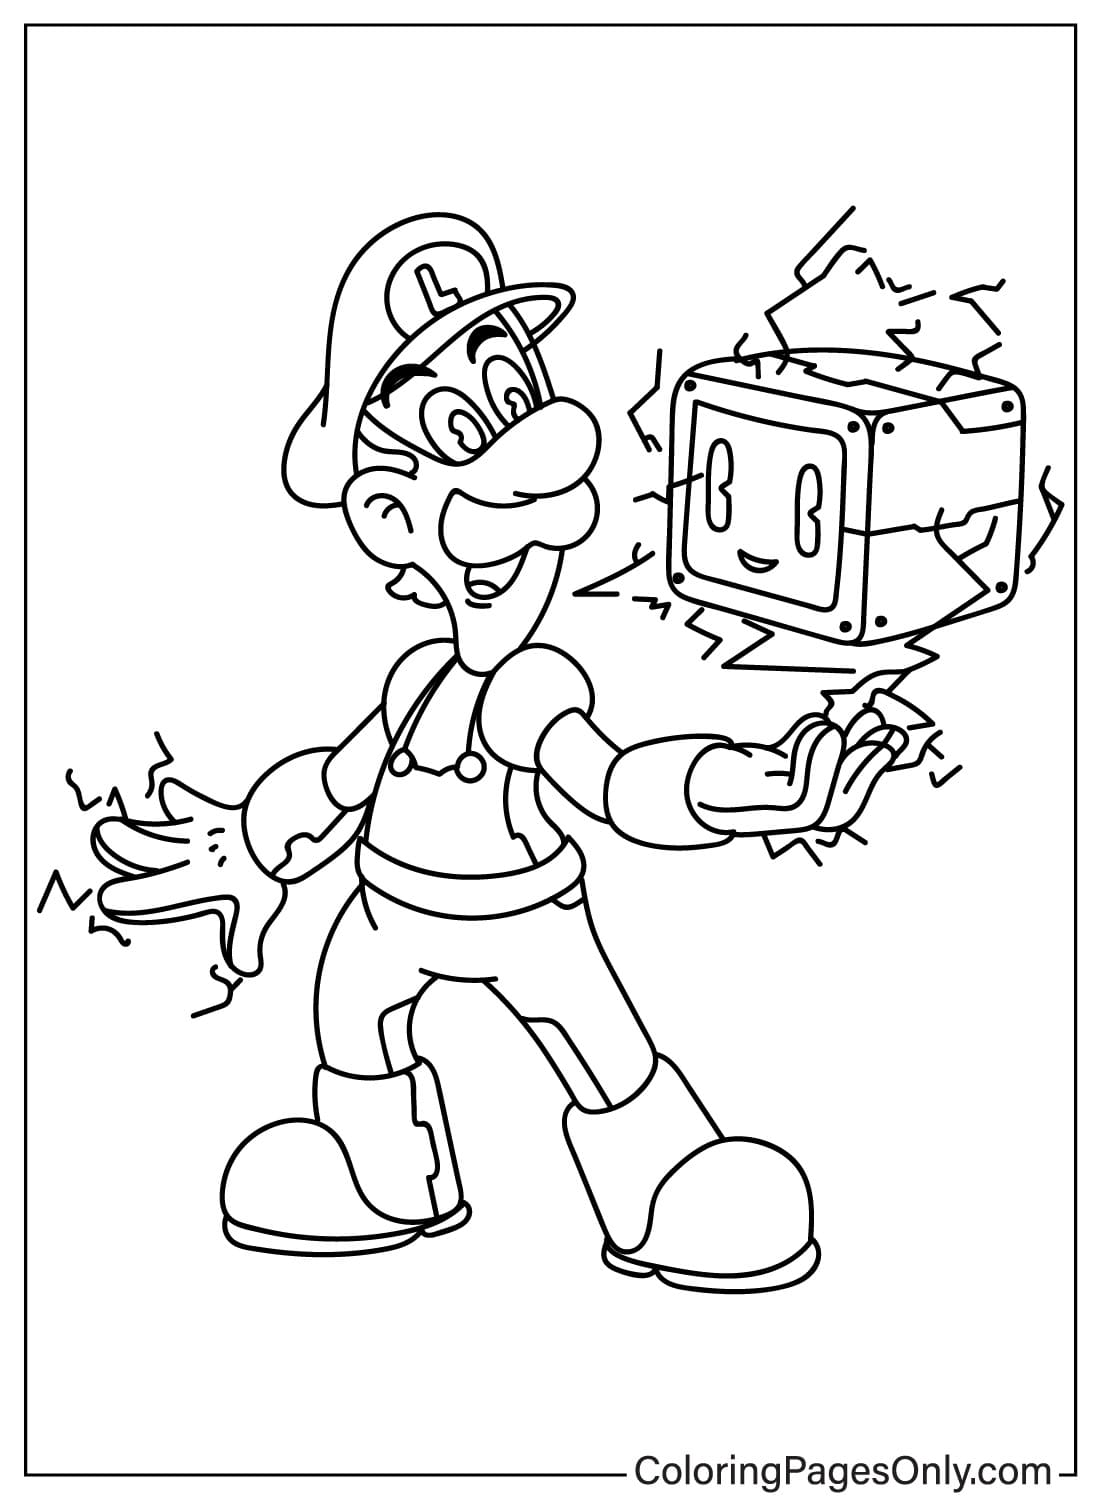 Página para colorear de Luigi gratis de Luigi